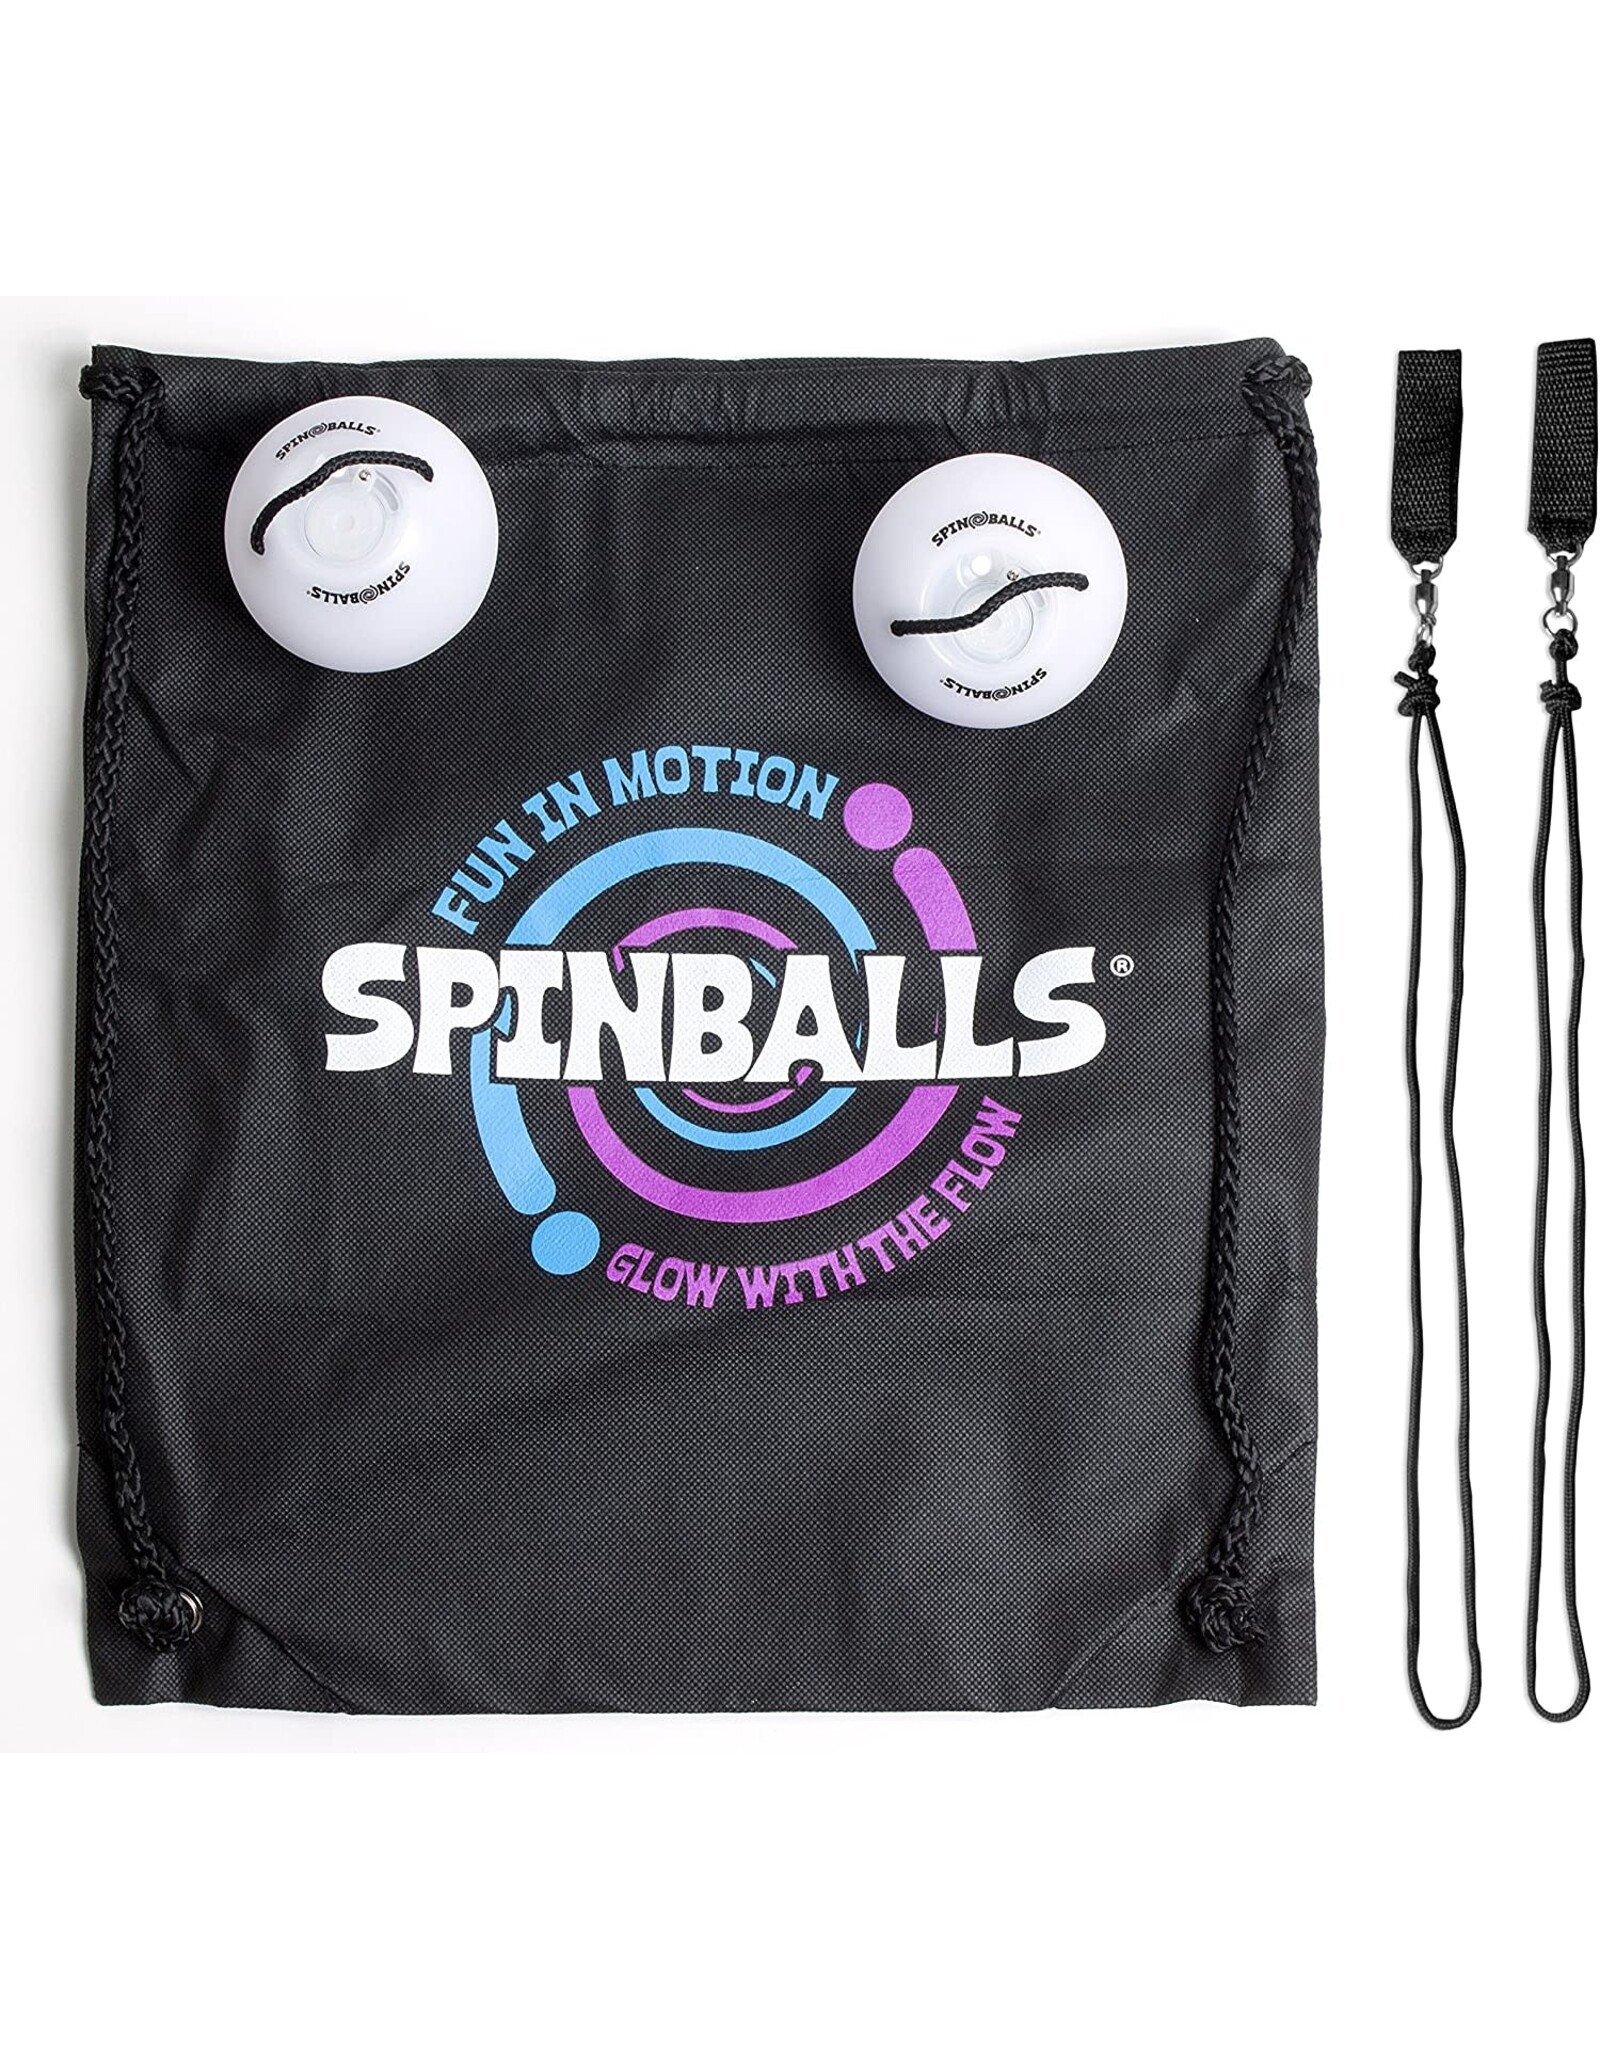 Fun in Motion Spin balls LED Poi Kit